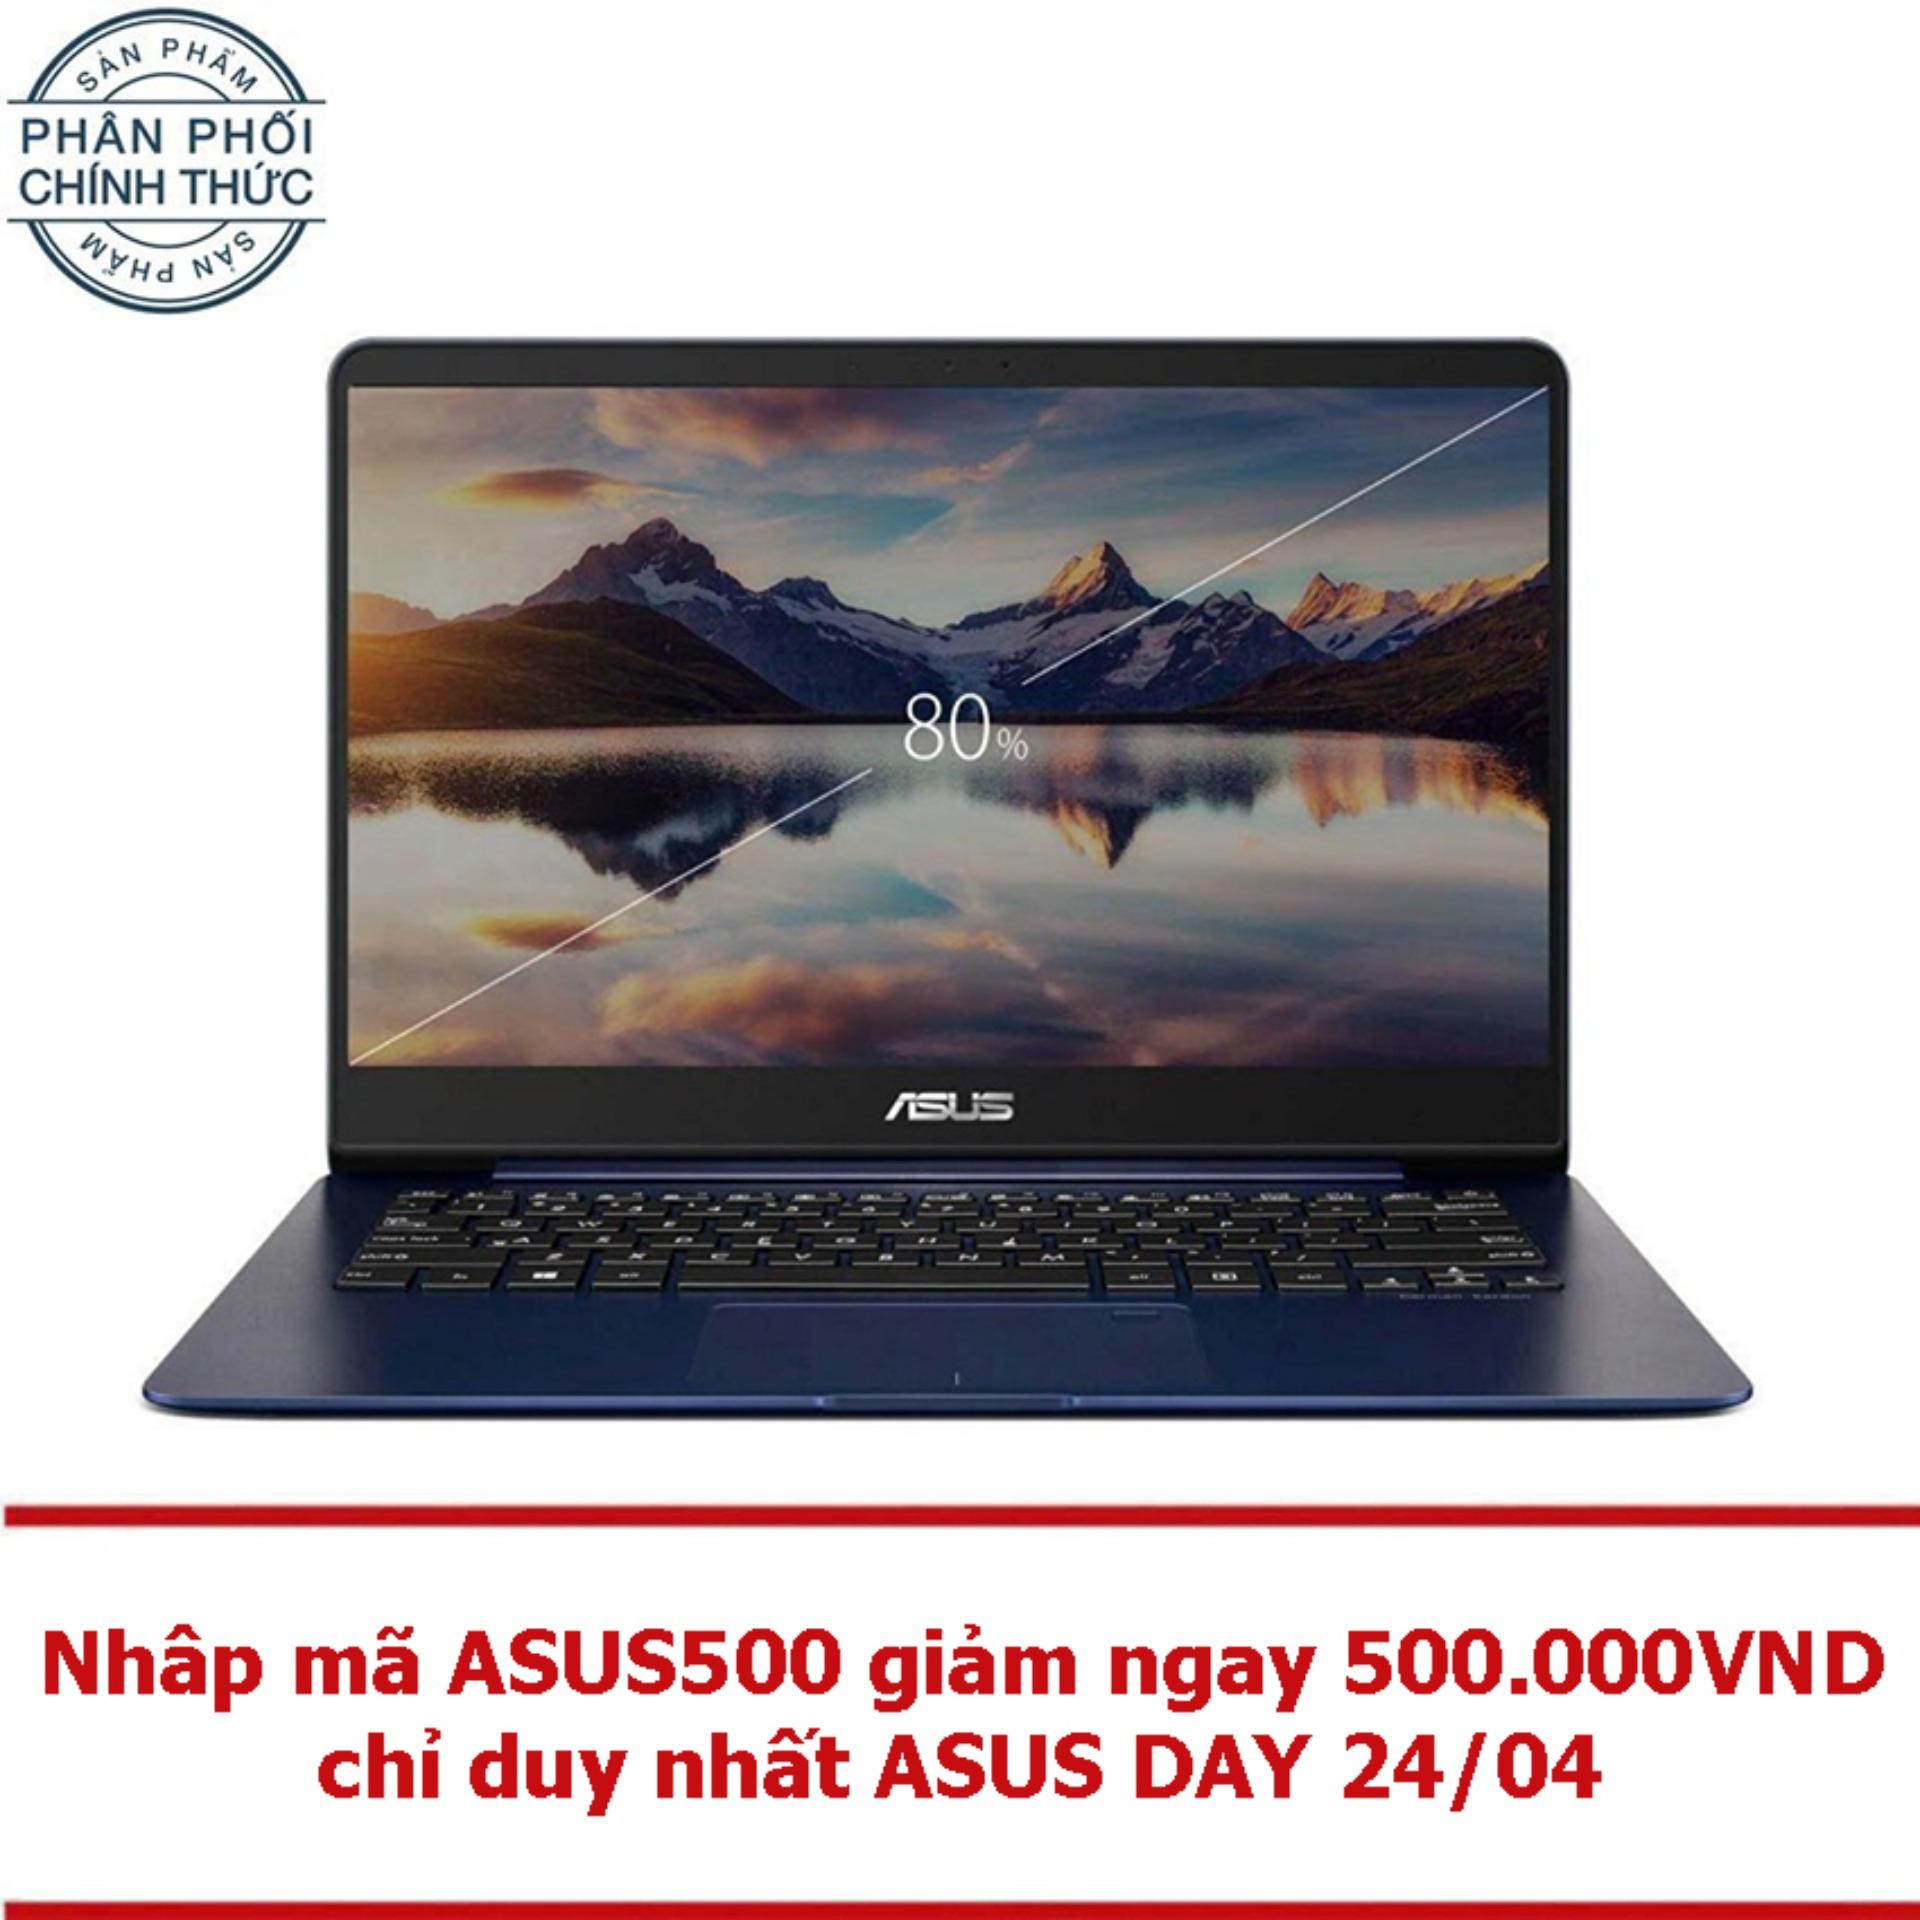 Laptop Asus Zenbook UX430UA-GV334T 14inch Windows 10 (Xanh dương) - Hãng Phân Phối Chính Thức